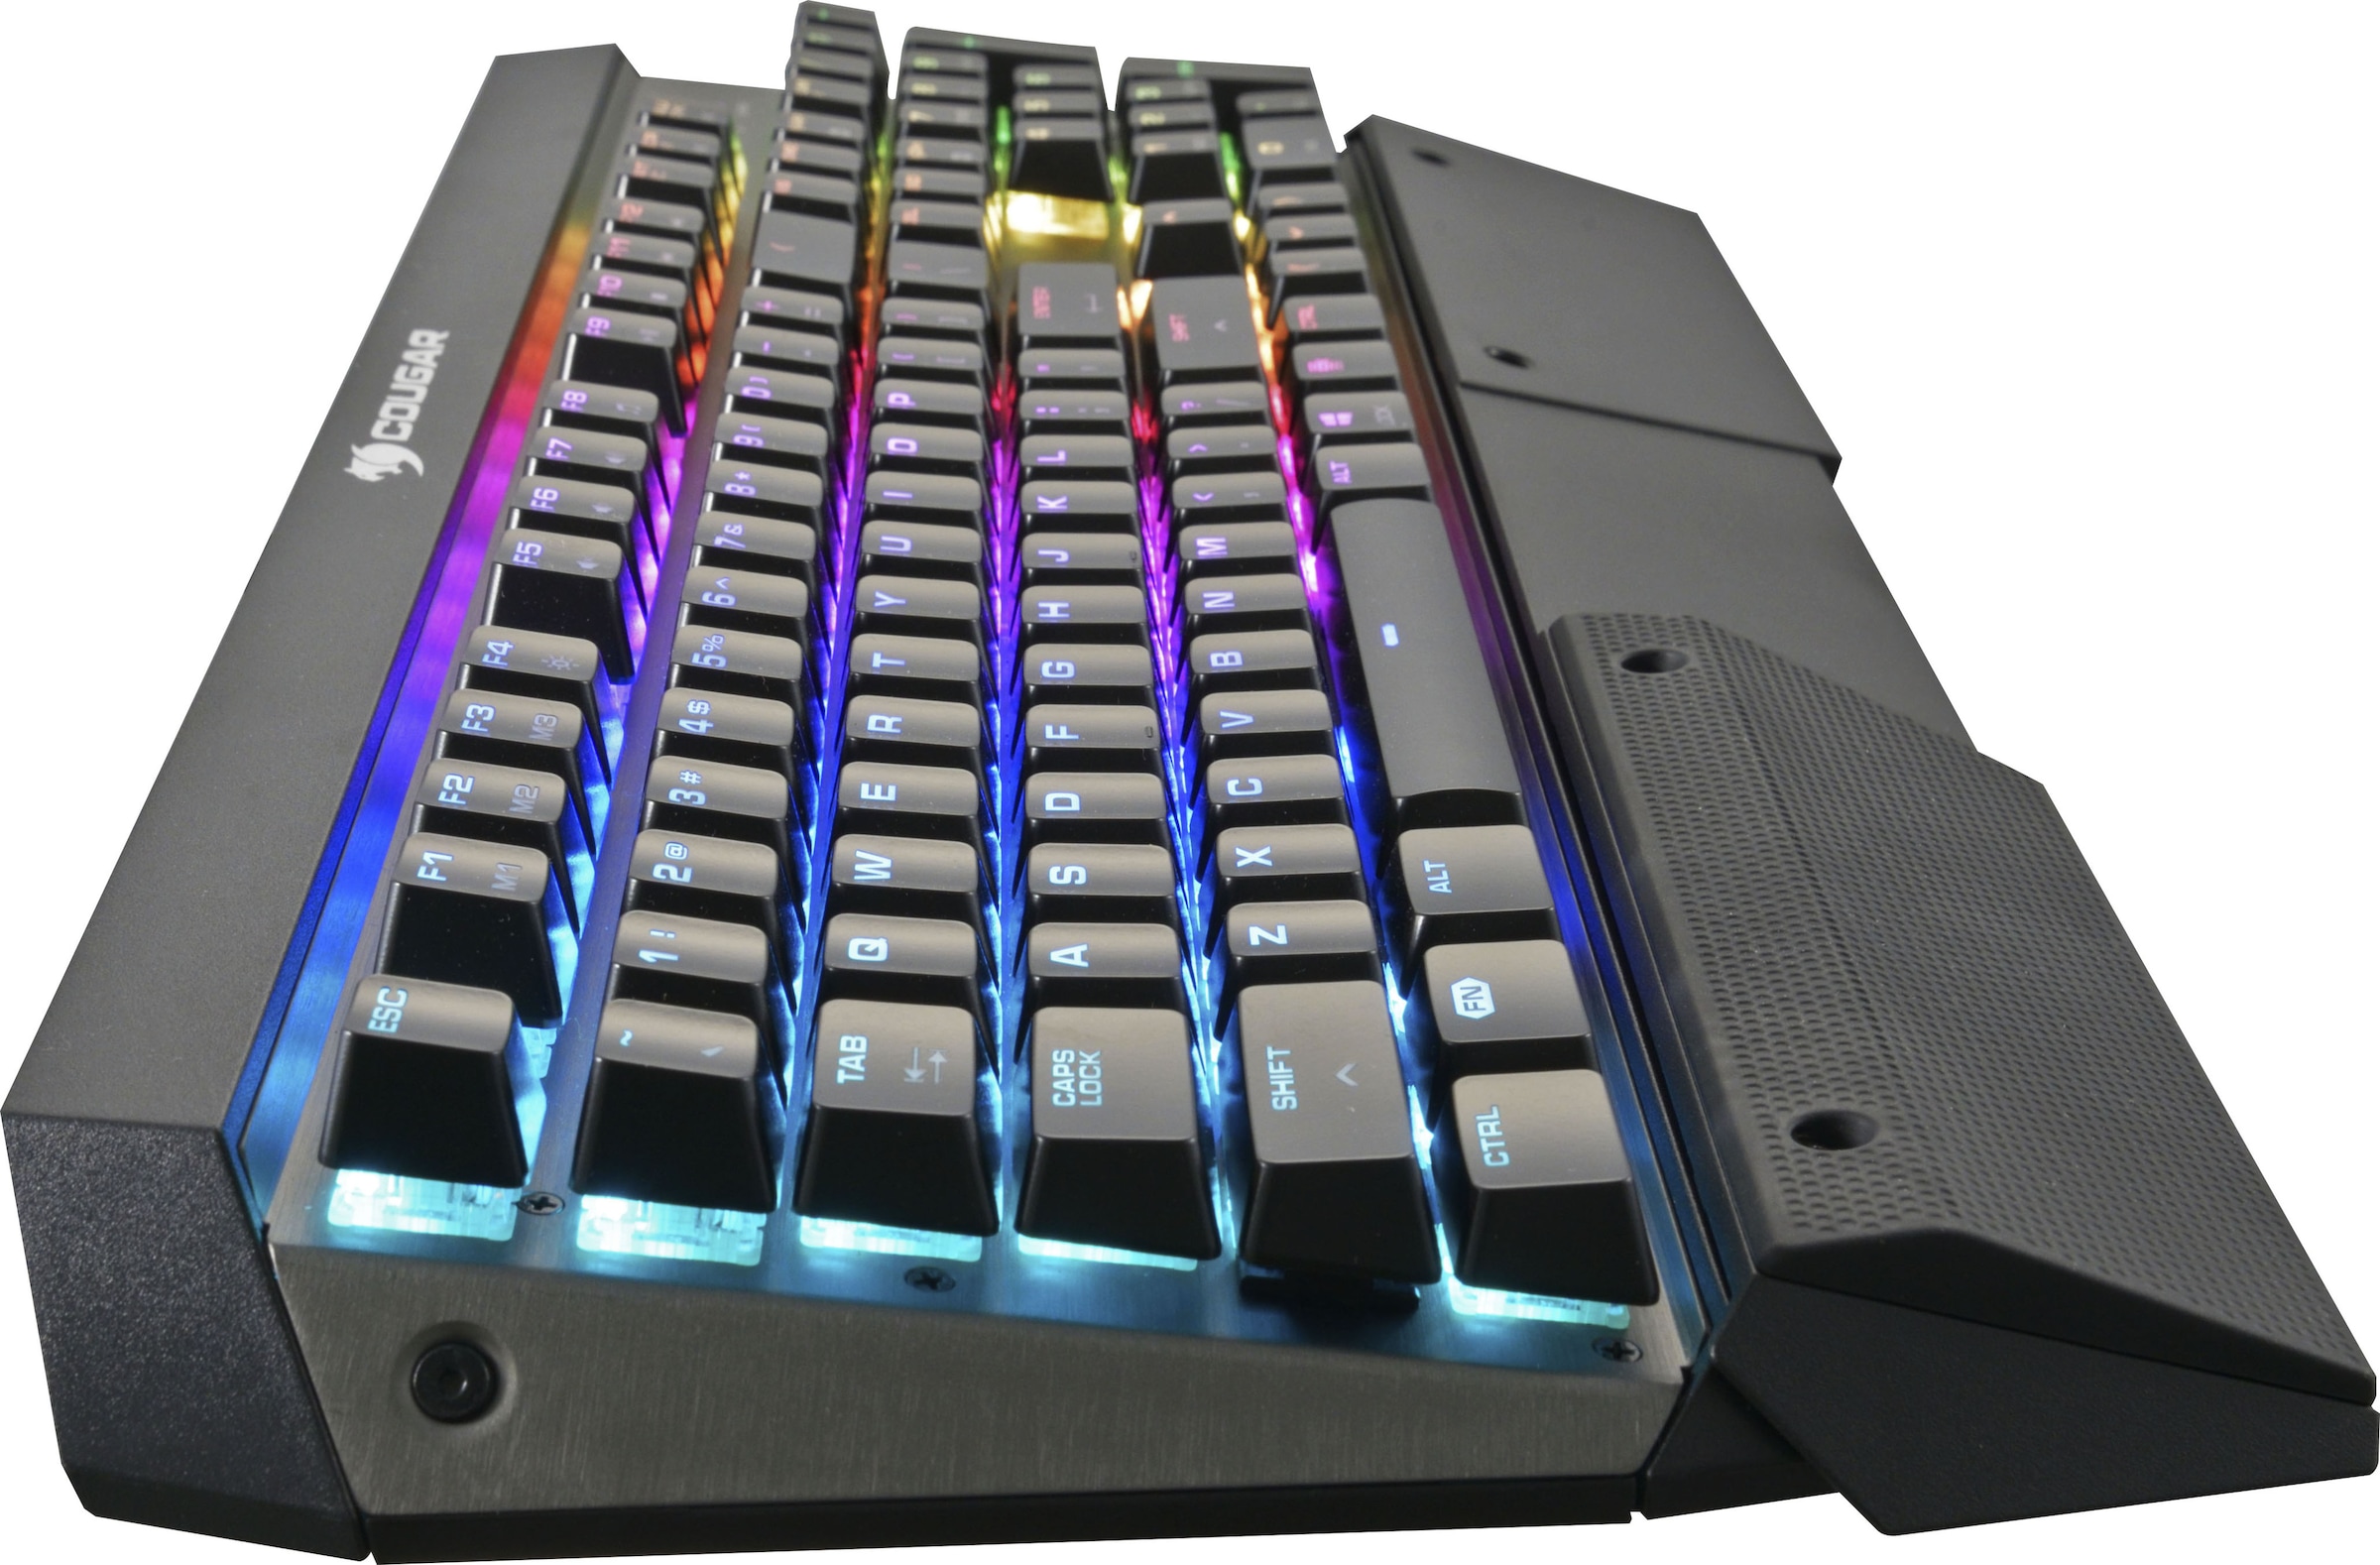 Cougar Gaming-Tastatur »ULTIMUS RGB Mechanisch«, (Easy-Switch-Fn-Tasten-Lautstärkeregler-Makro-Tasten-Multimedia-Tasten-Profil-Speicher-Windows-Sperrtaste-Ziffernblock), CHERRY RGB MX-Tasten